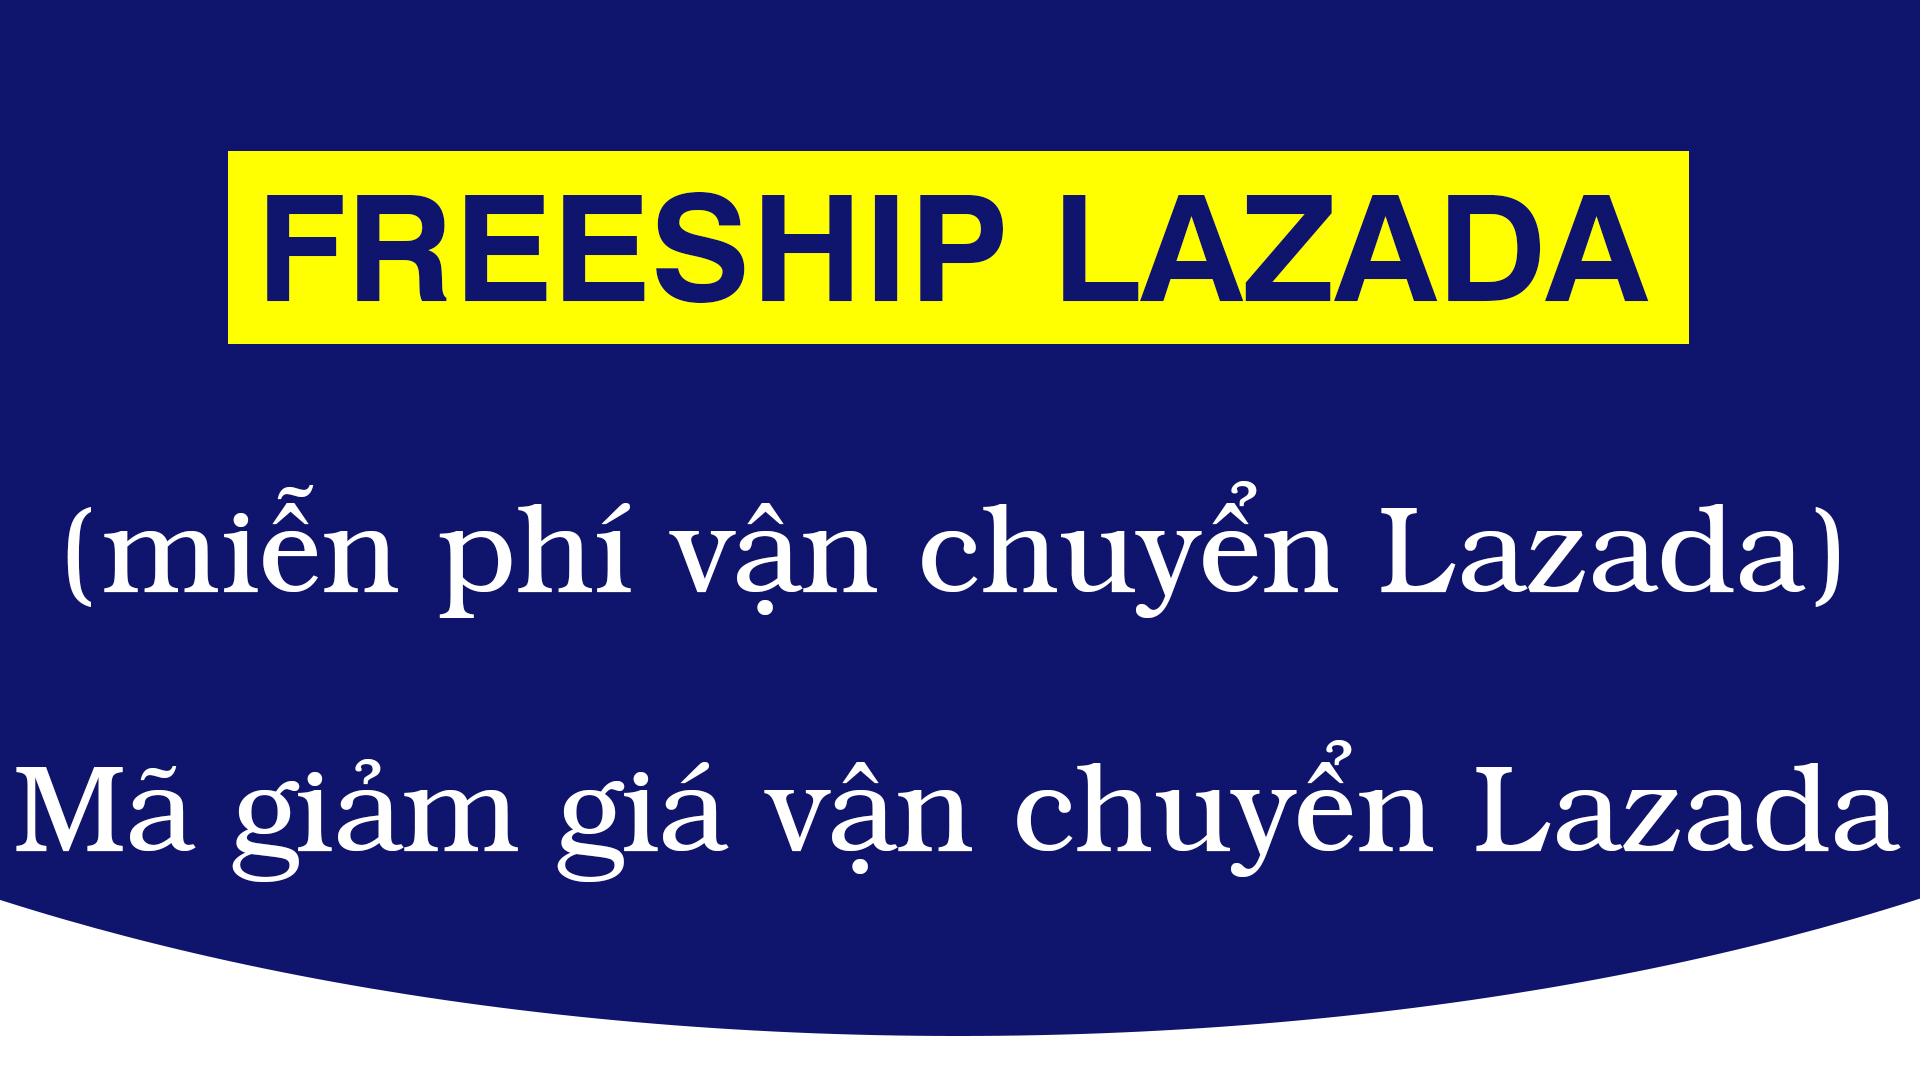 Mã miễn phí vận chuyển Lazada? cách lấy và sử dụng mã freeship Lazada?